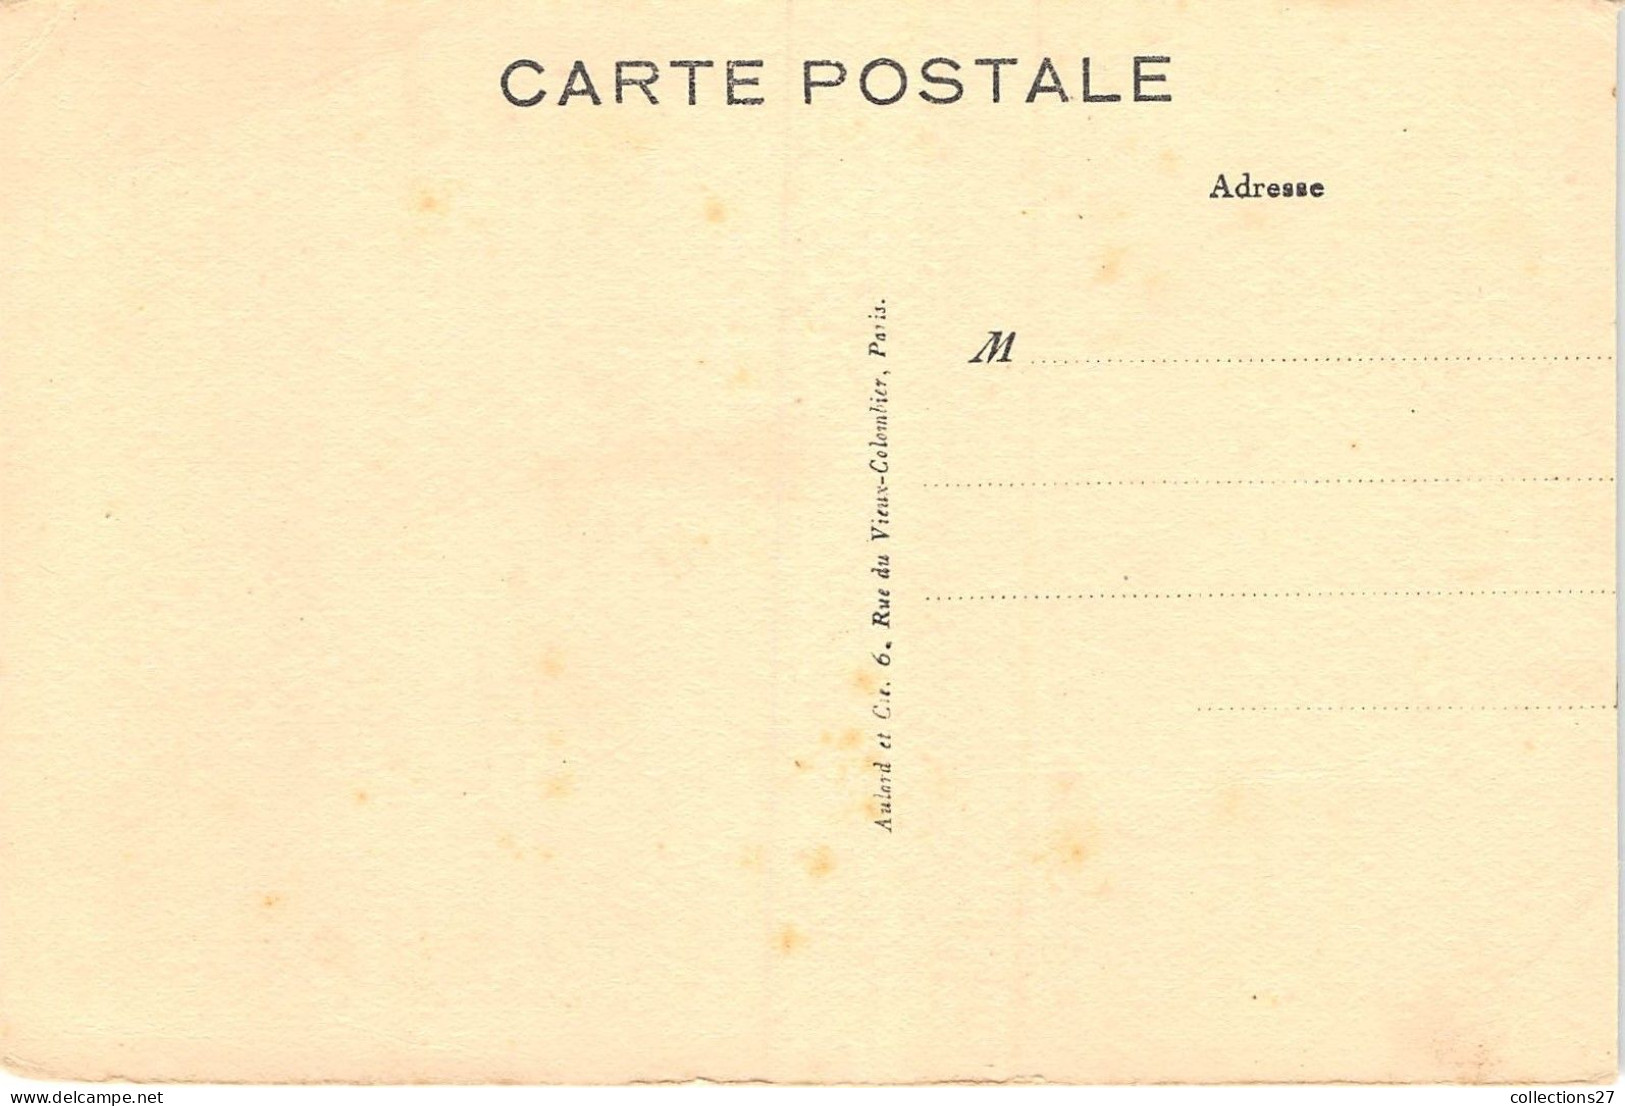 PARIS-75020- P.S.P AVRIL 1928 ETAT DES TRAVAUX 29 RUE DU RETRAIT - District 20